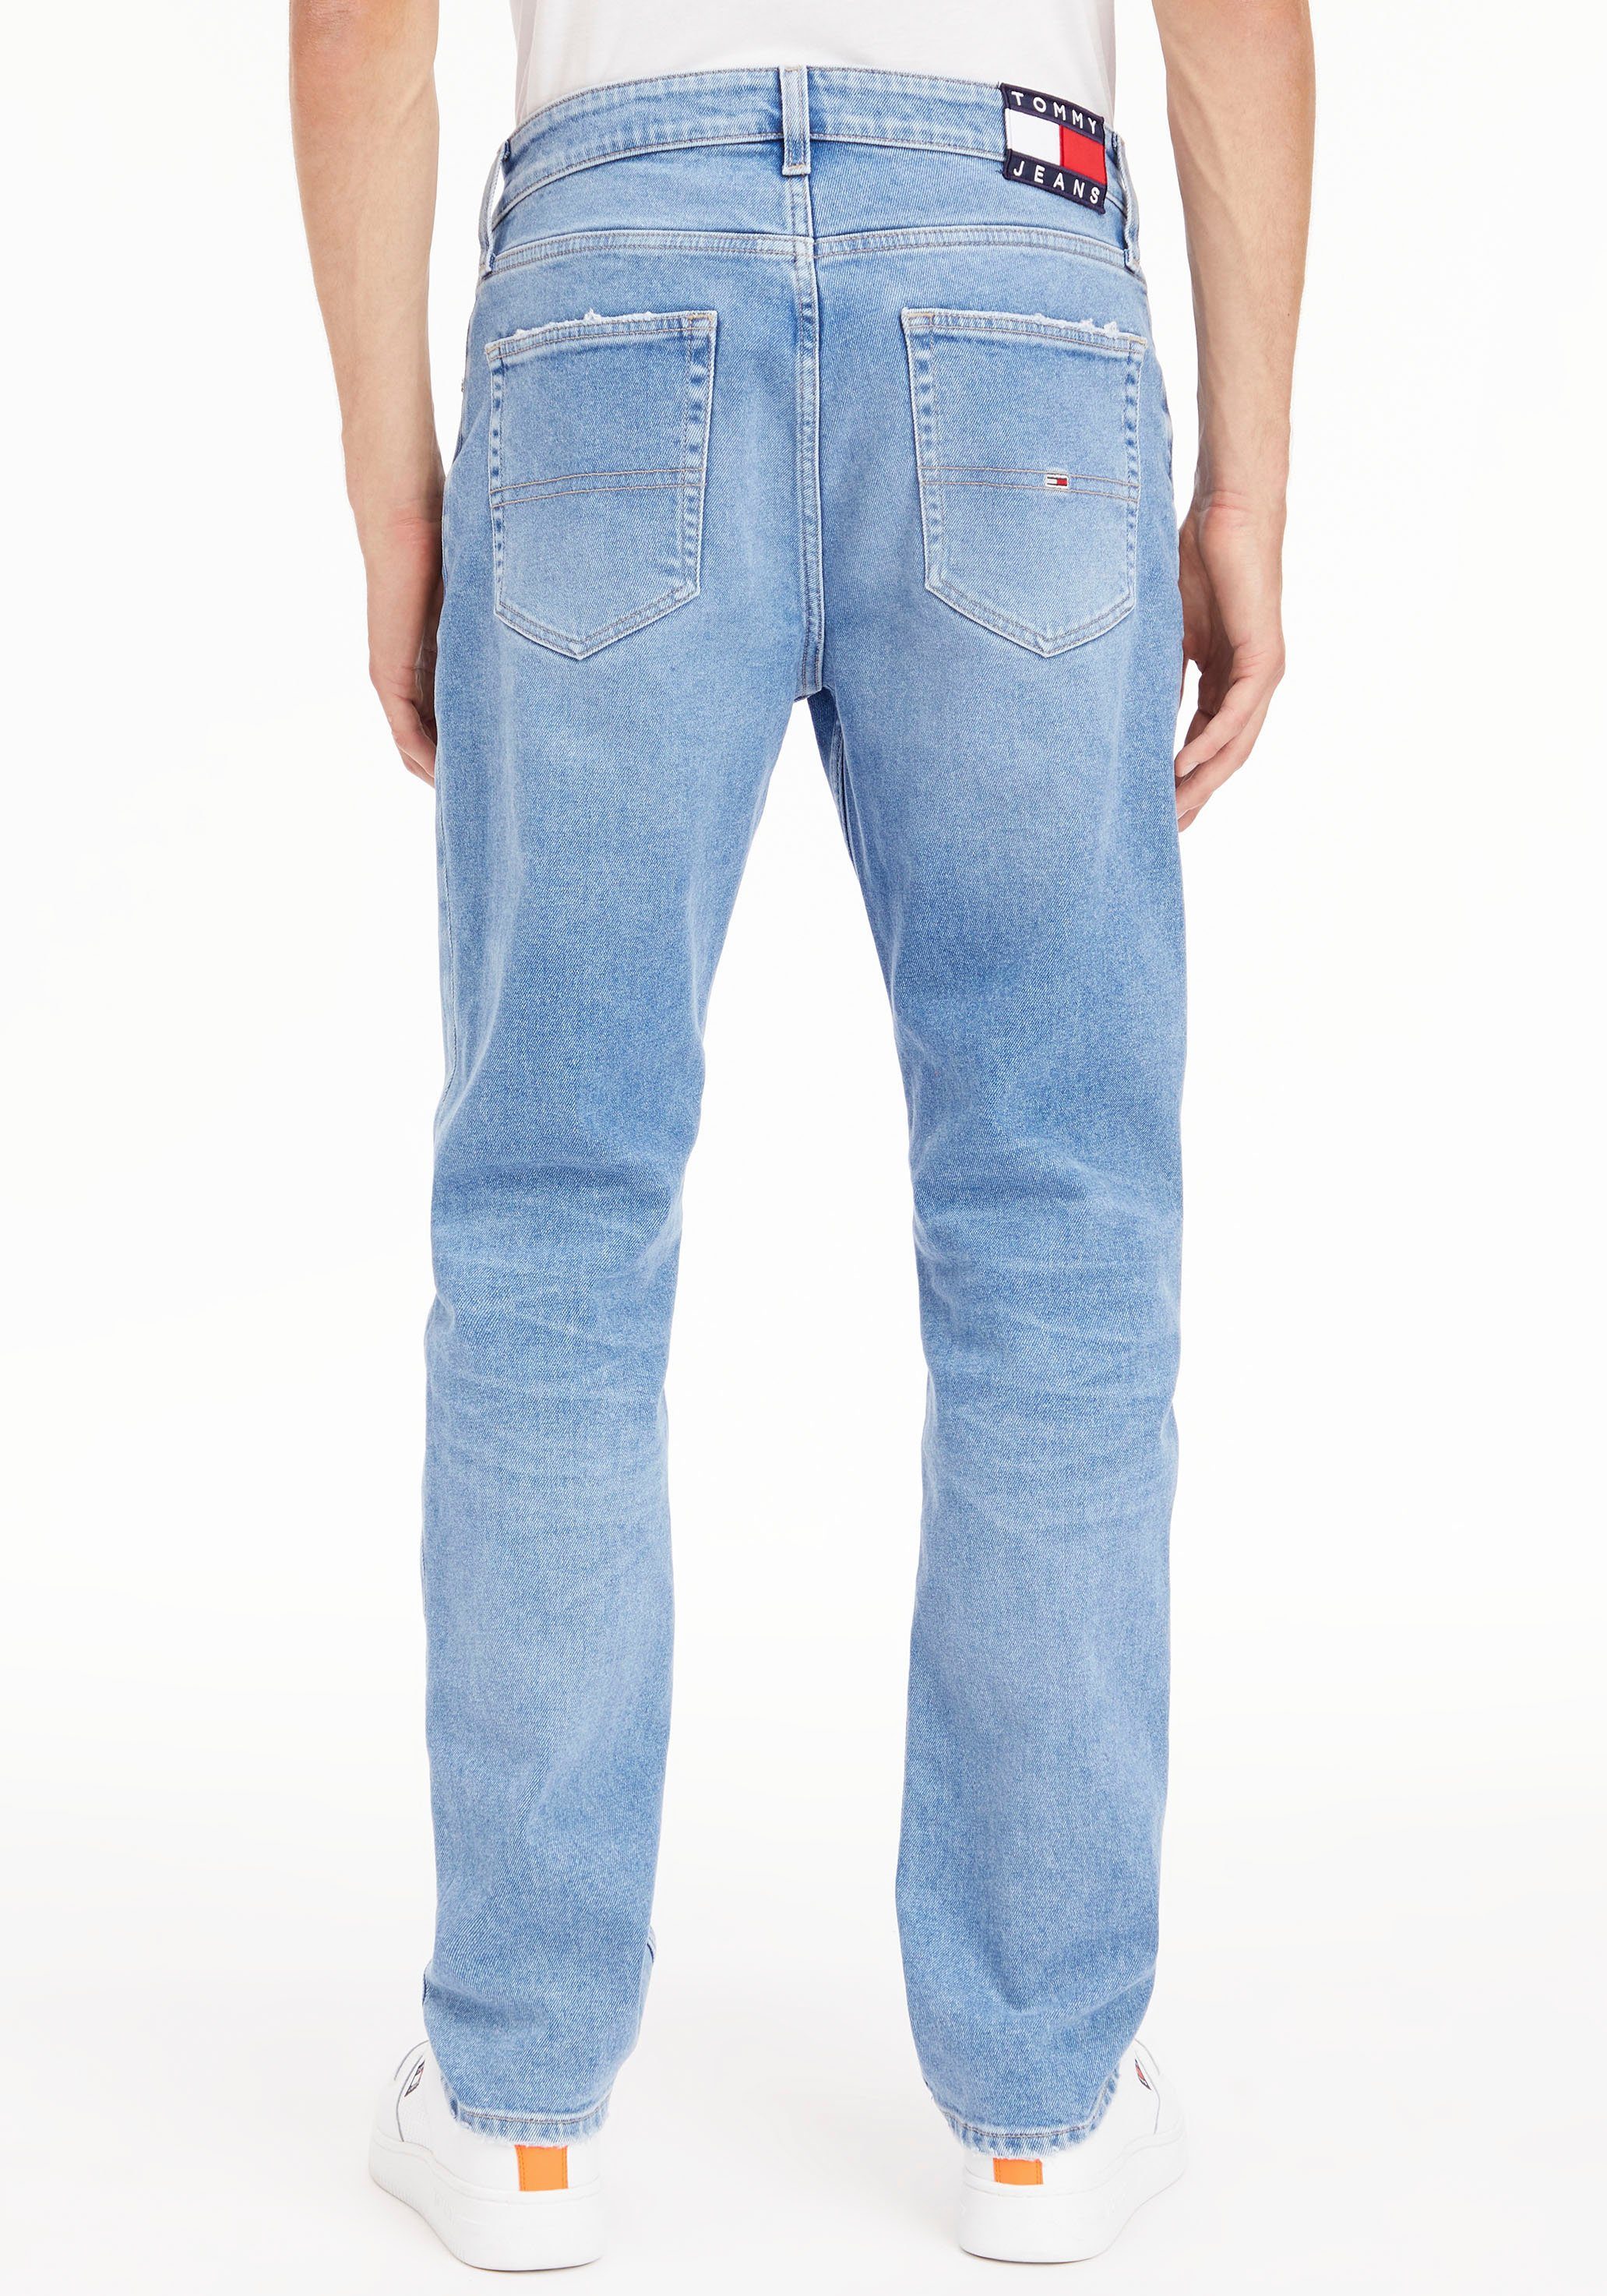 Jeansshorts SHORT PANT Destroyed- HOT BG0036 Tommy Abriebeffekten und Jeans mit